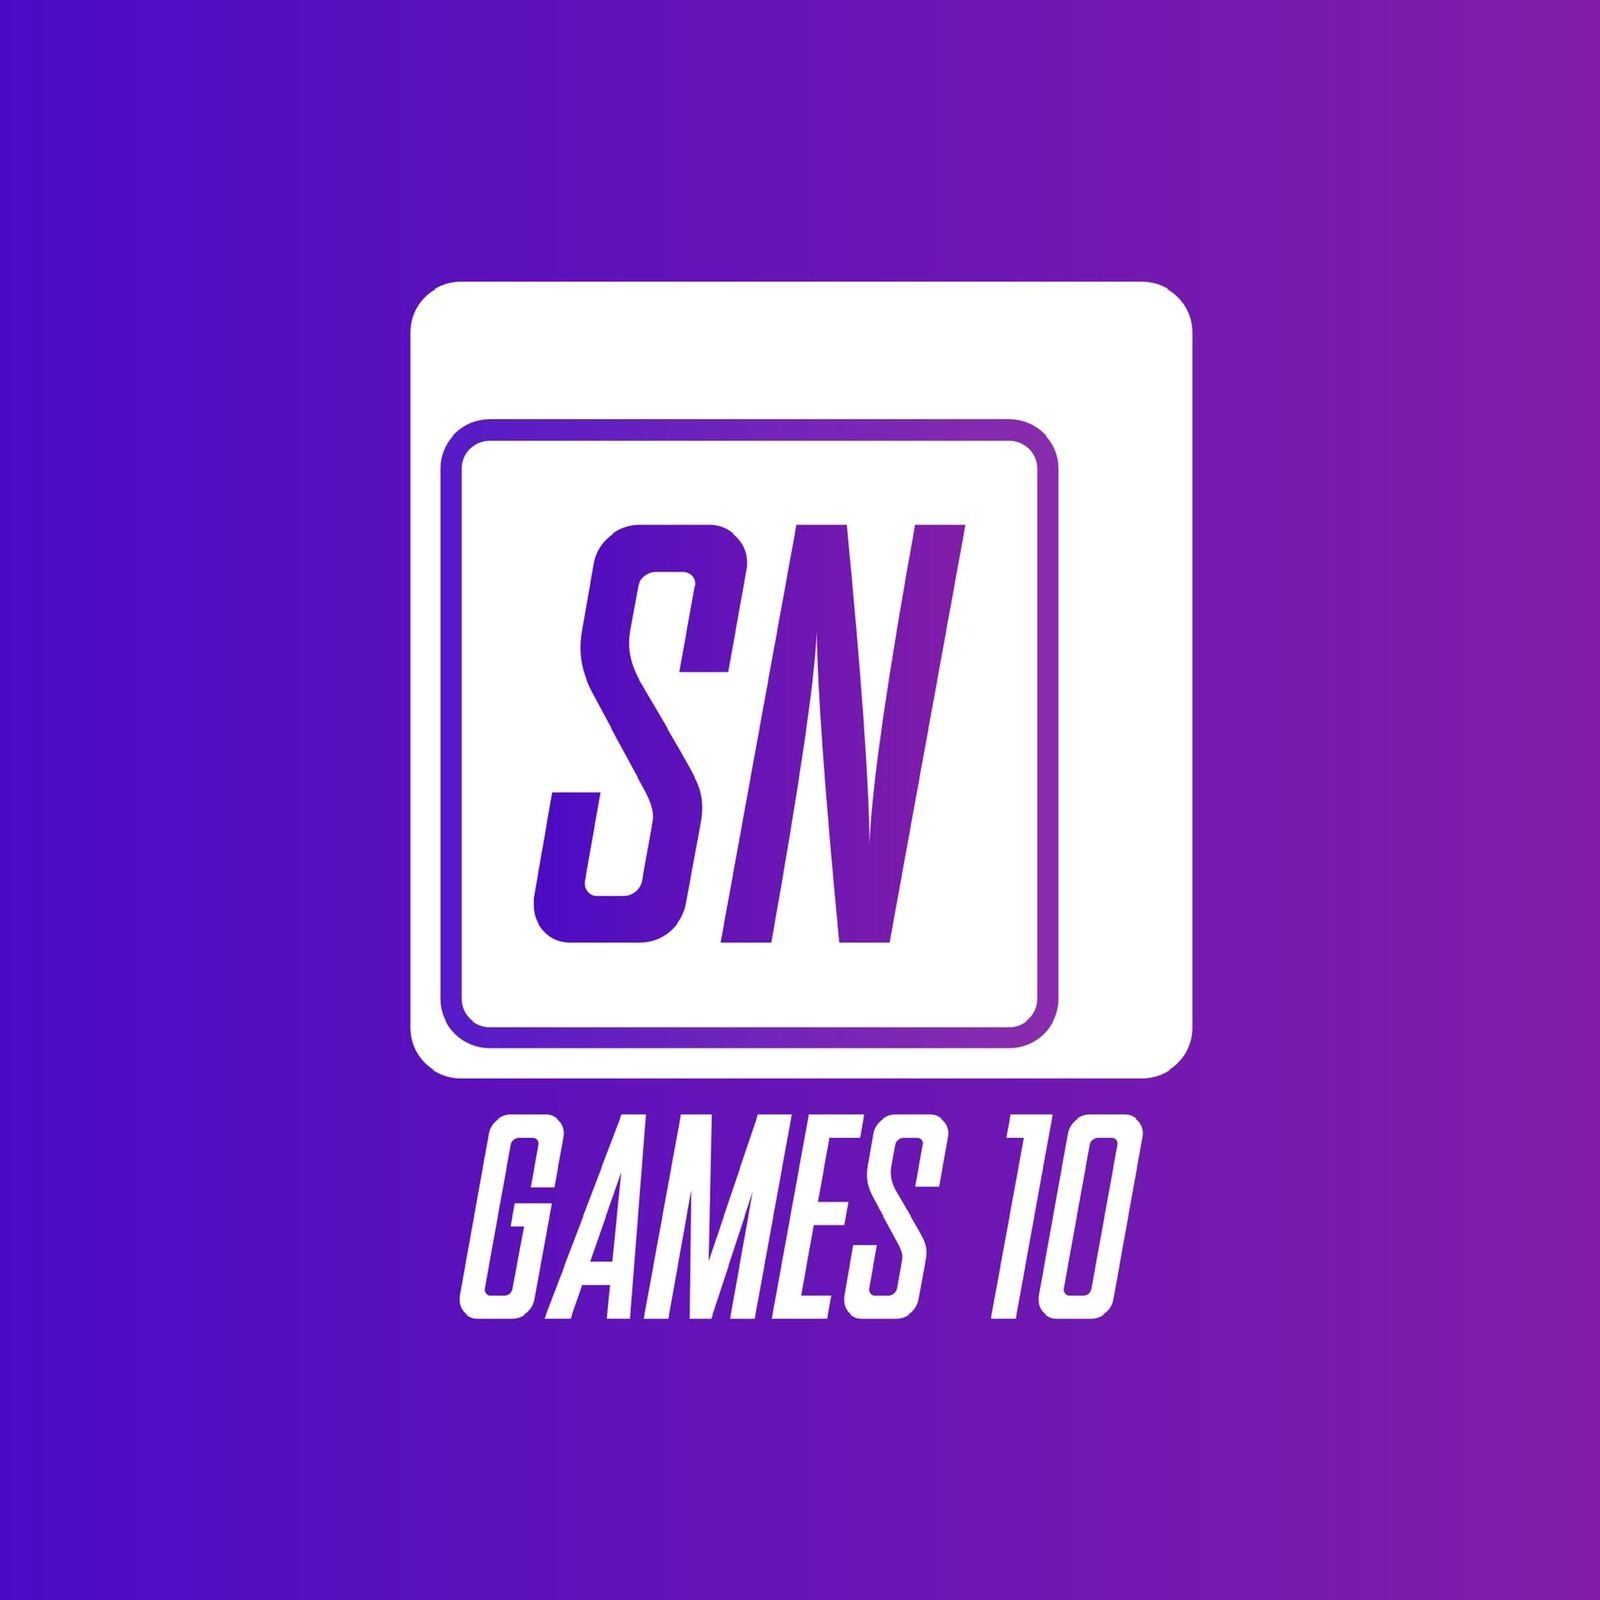 Game Retrô para Notebook/Pc com 2 controles e 1400 jogos de super nintendo  - Sn Games 10